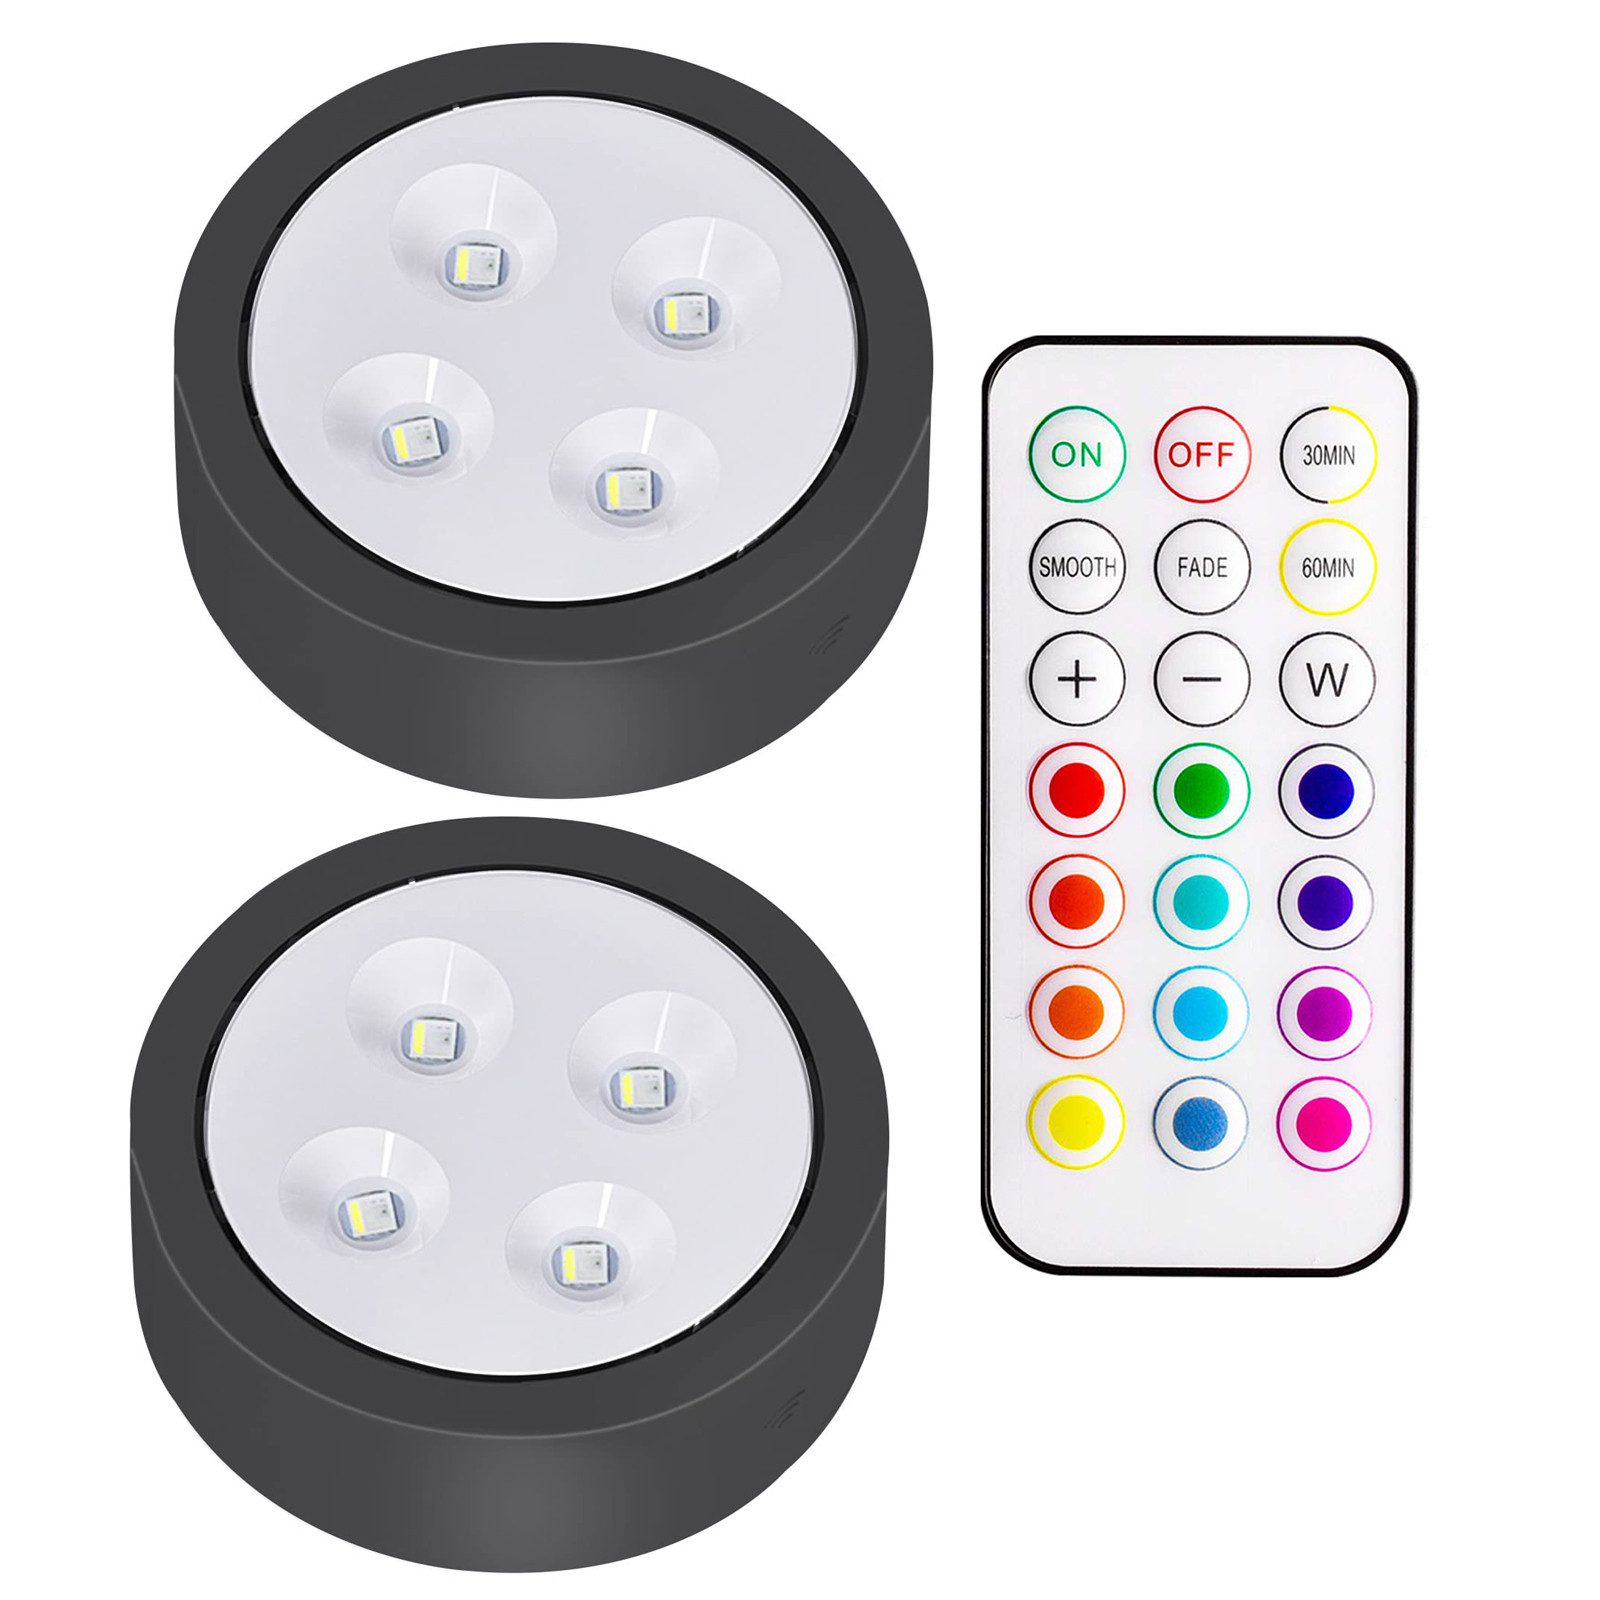 Jibenhome LED Unterbauleuchte RGB LED Unterschrankleucht Kabellose, Kleiderschranklitch Fernbedienung, Batteriebetrieben Unterbauleuchte, 13Farben & 2Modi, 4 Helligkeit